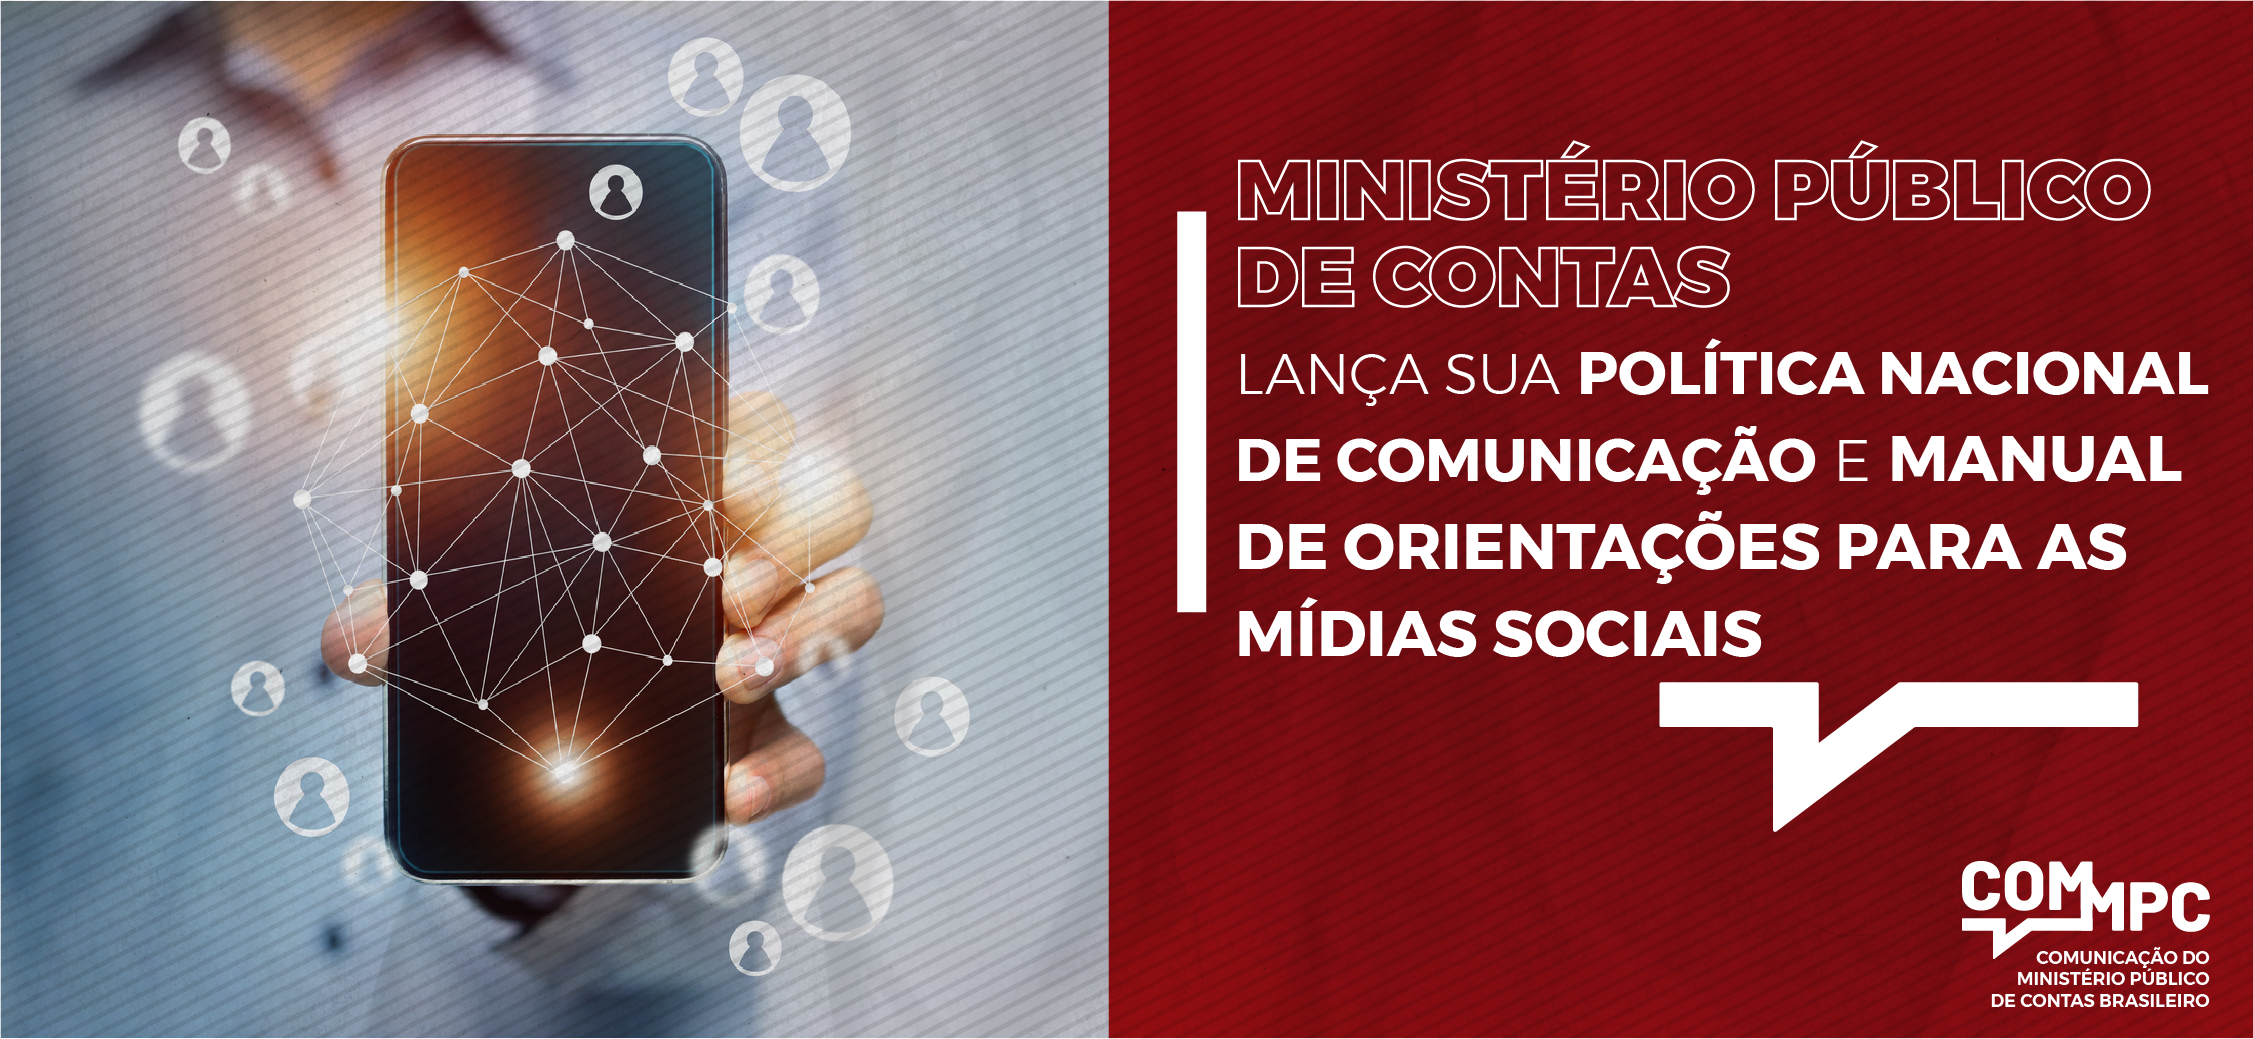 Read more about the article Ministério Público de Contas lança sua Política Nacional de Comunicação e Manual de Orientações para as Mídias Sociais